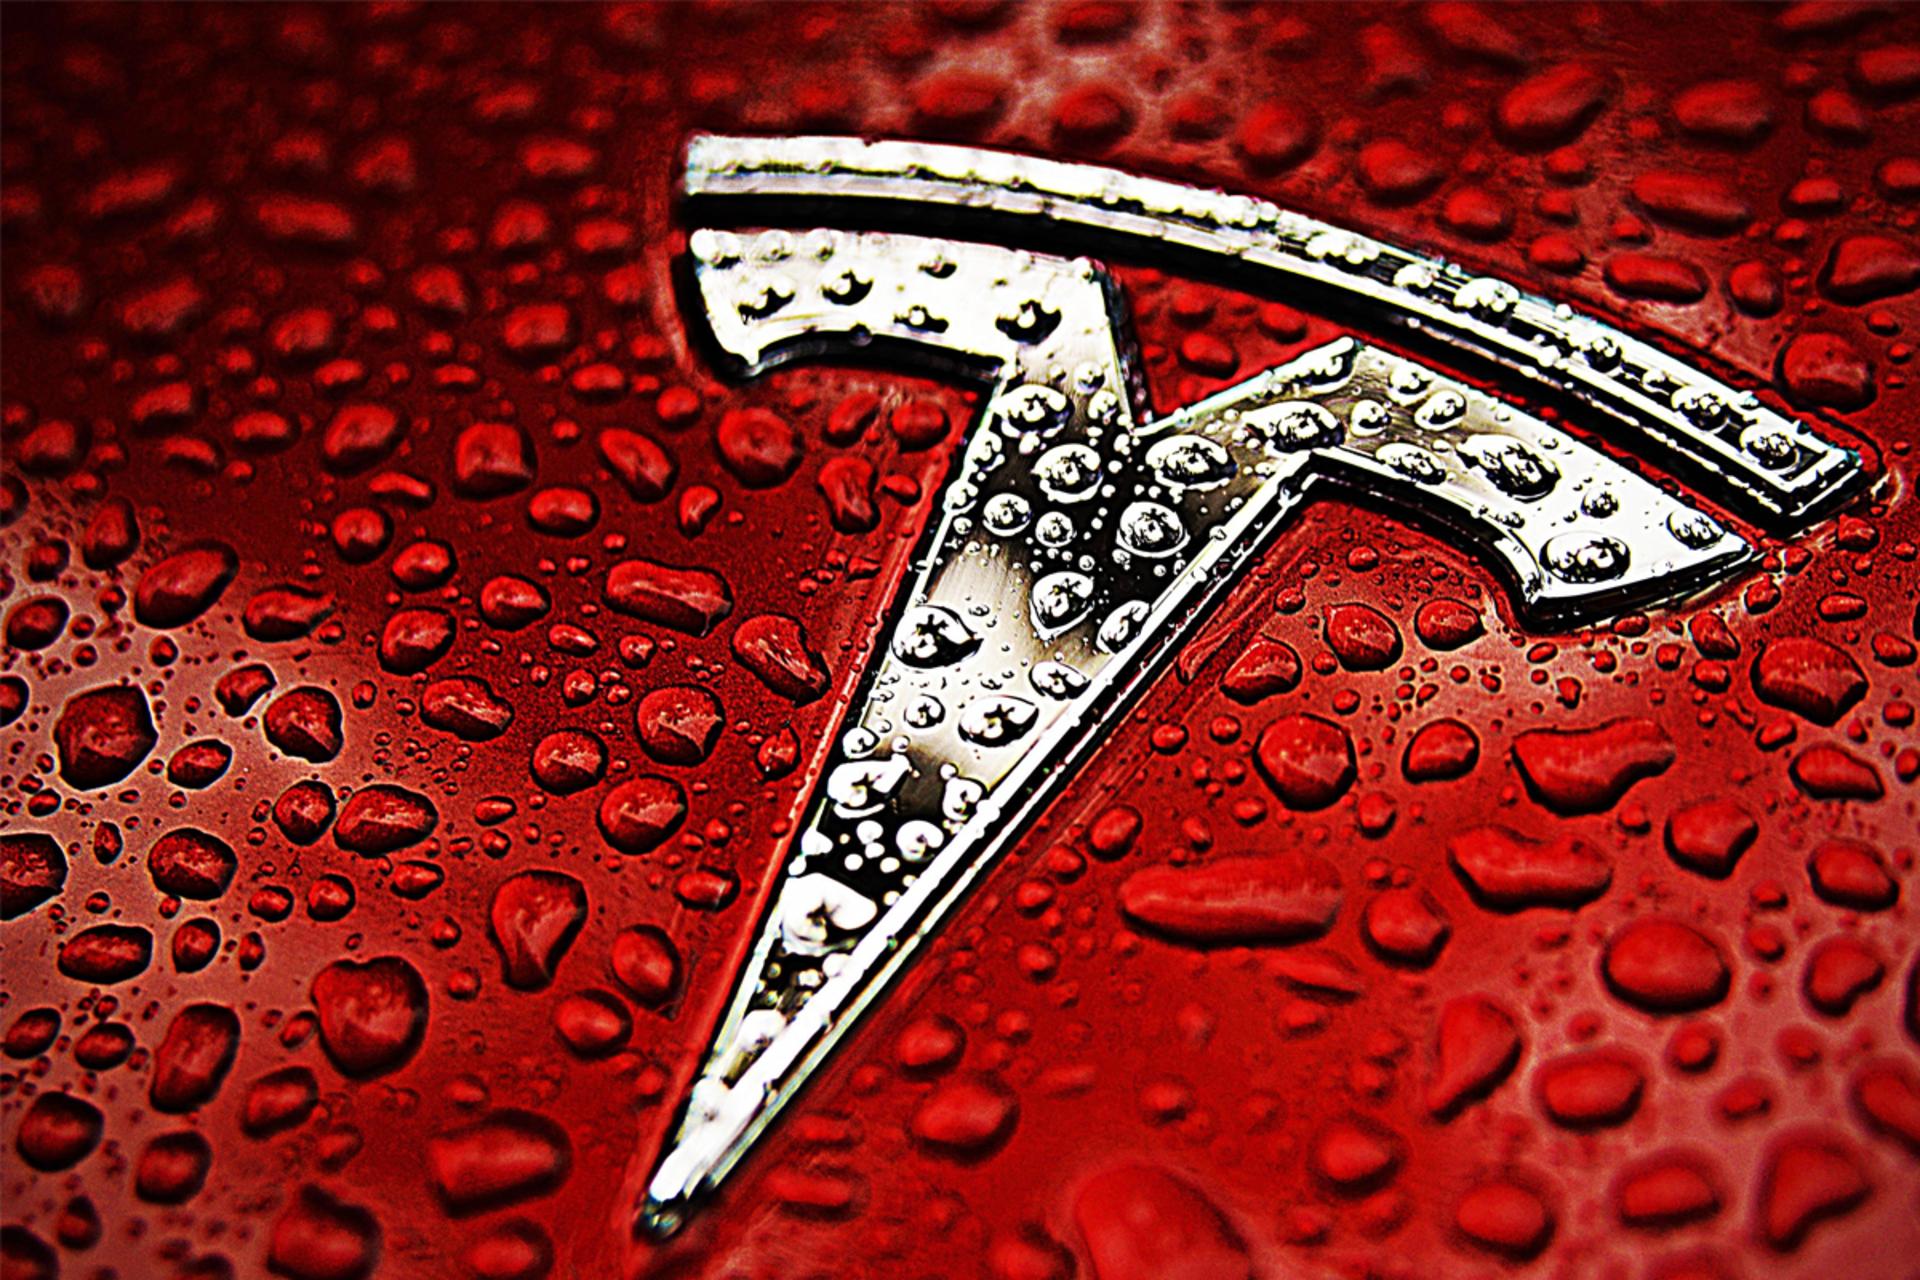 لوگو تسلا / Tesla روی خودرو قرمز از نمای نزدیک